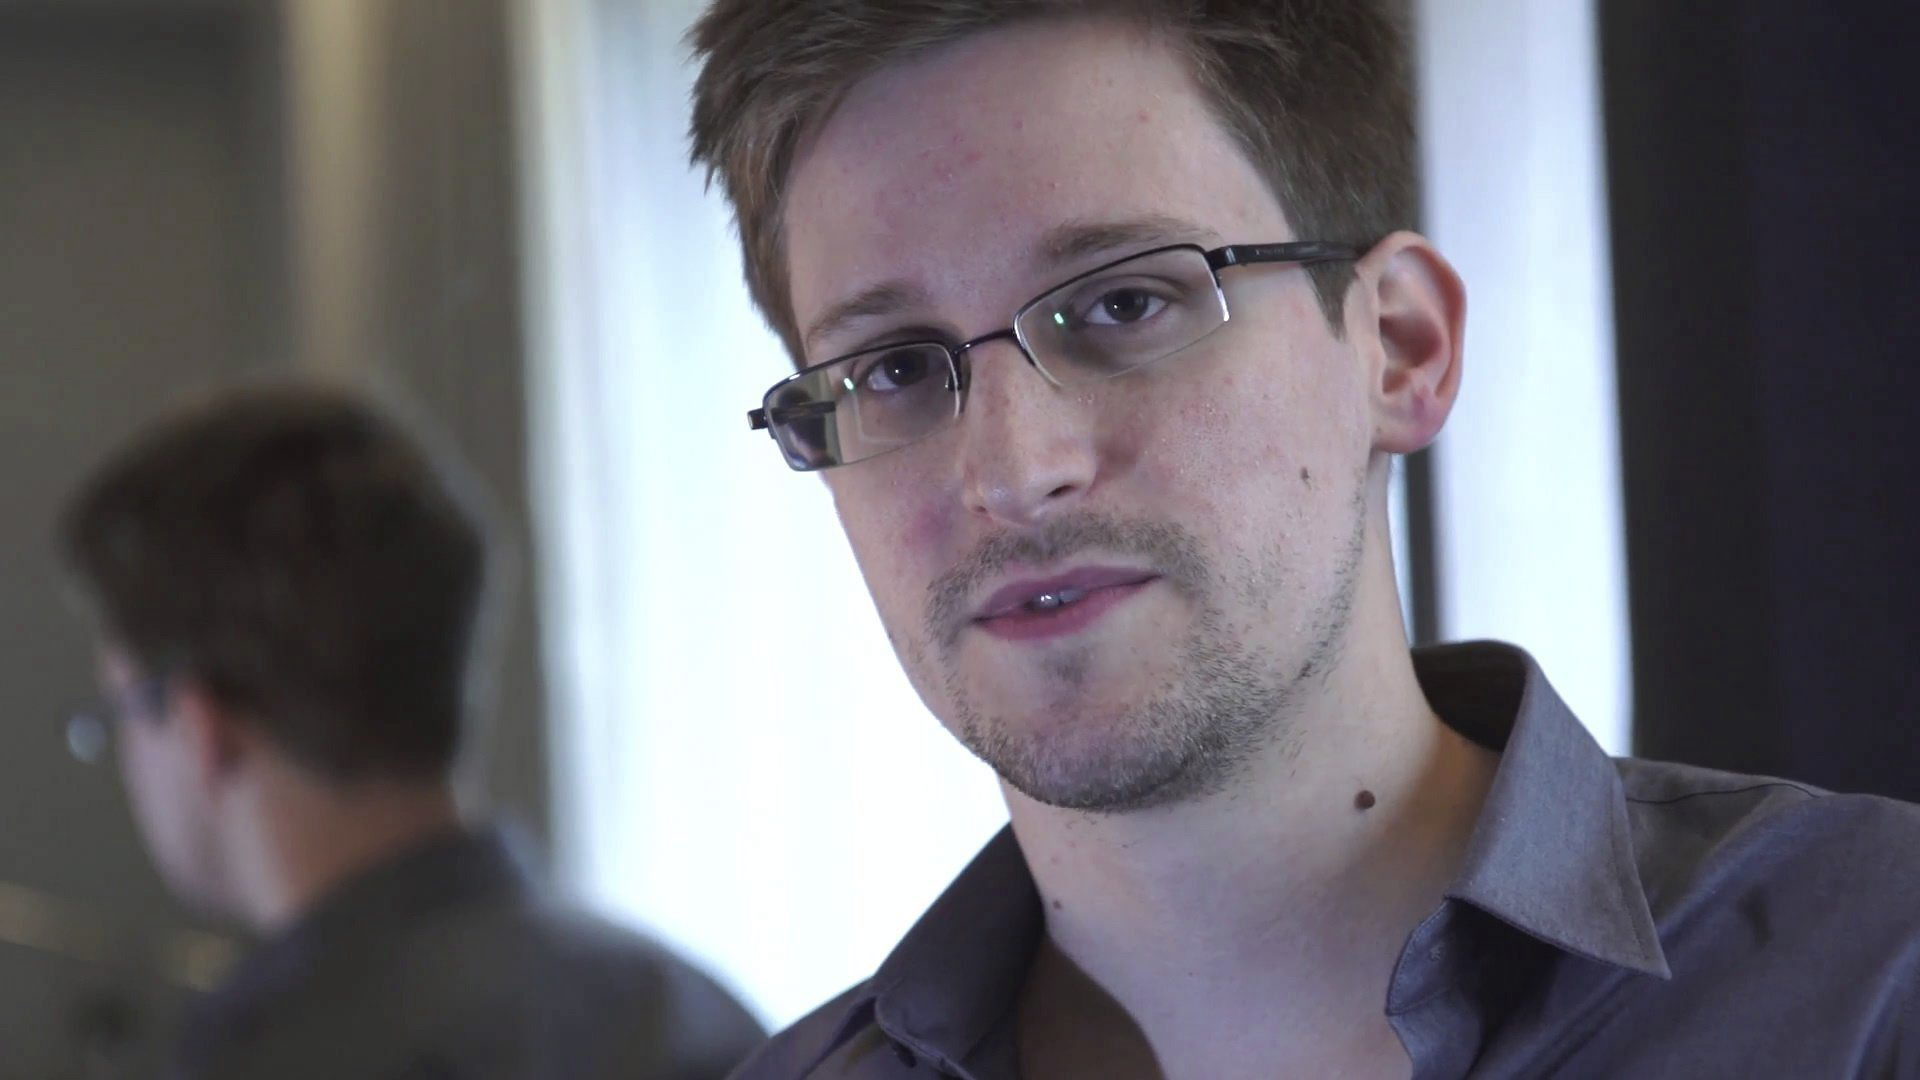 La embajada de Nicaragua en Moscú recibe la solicitud de asilo de Snowden